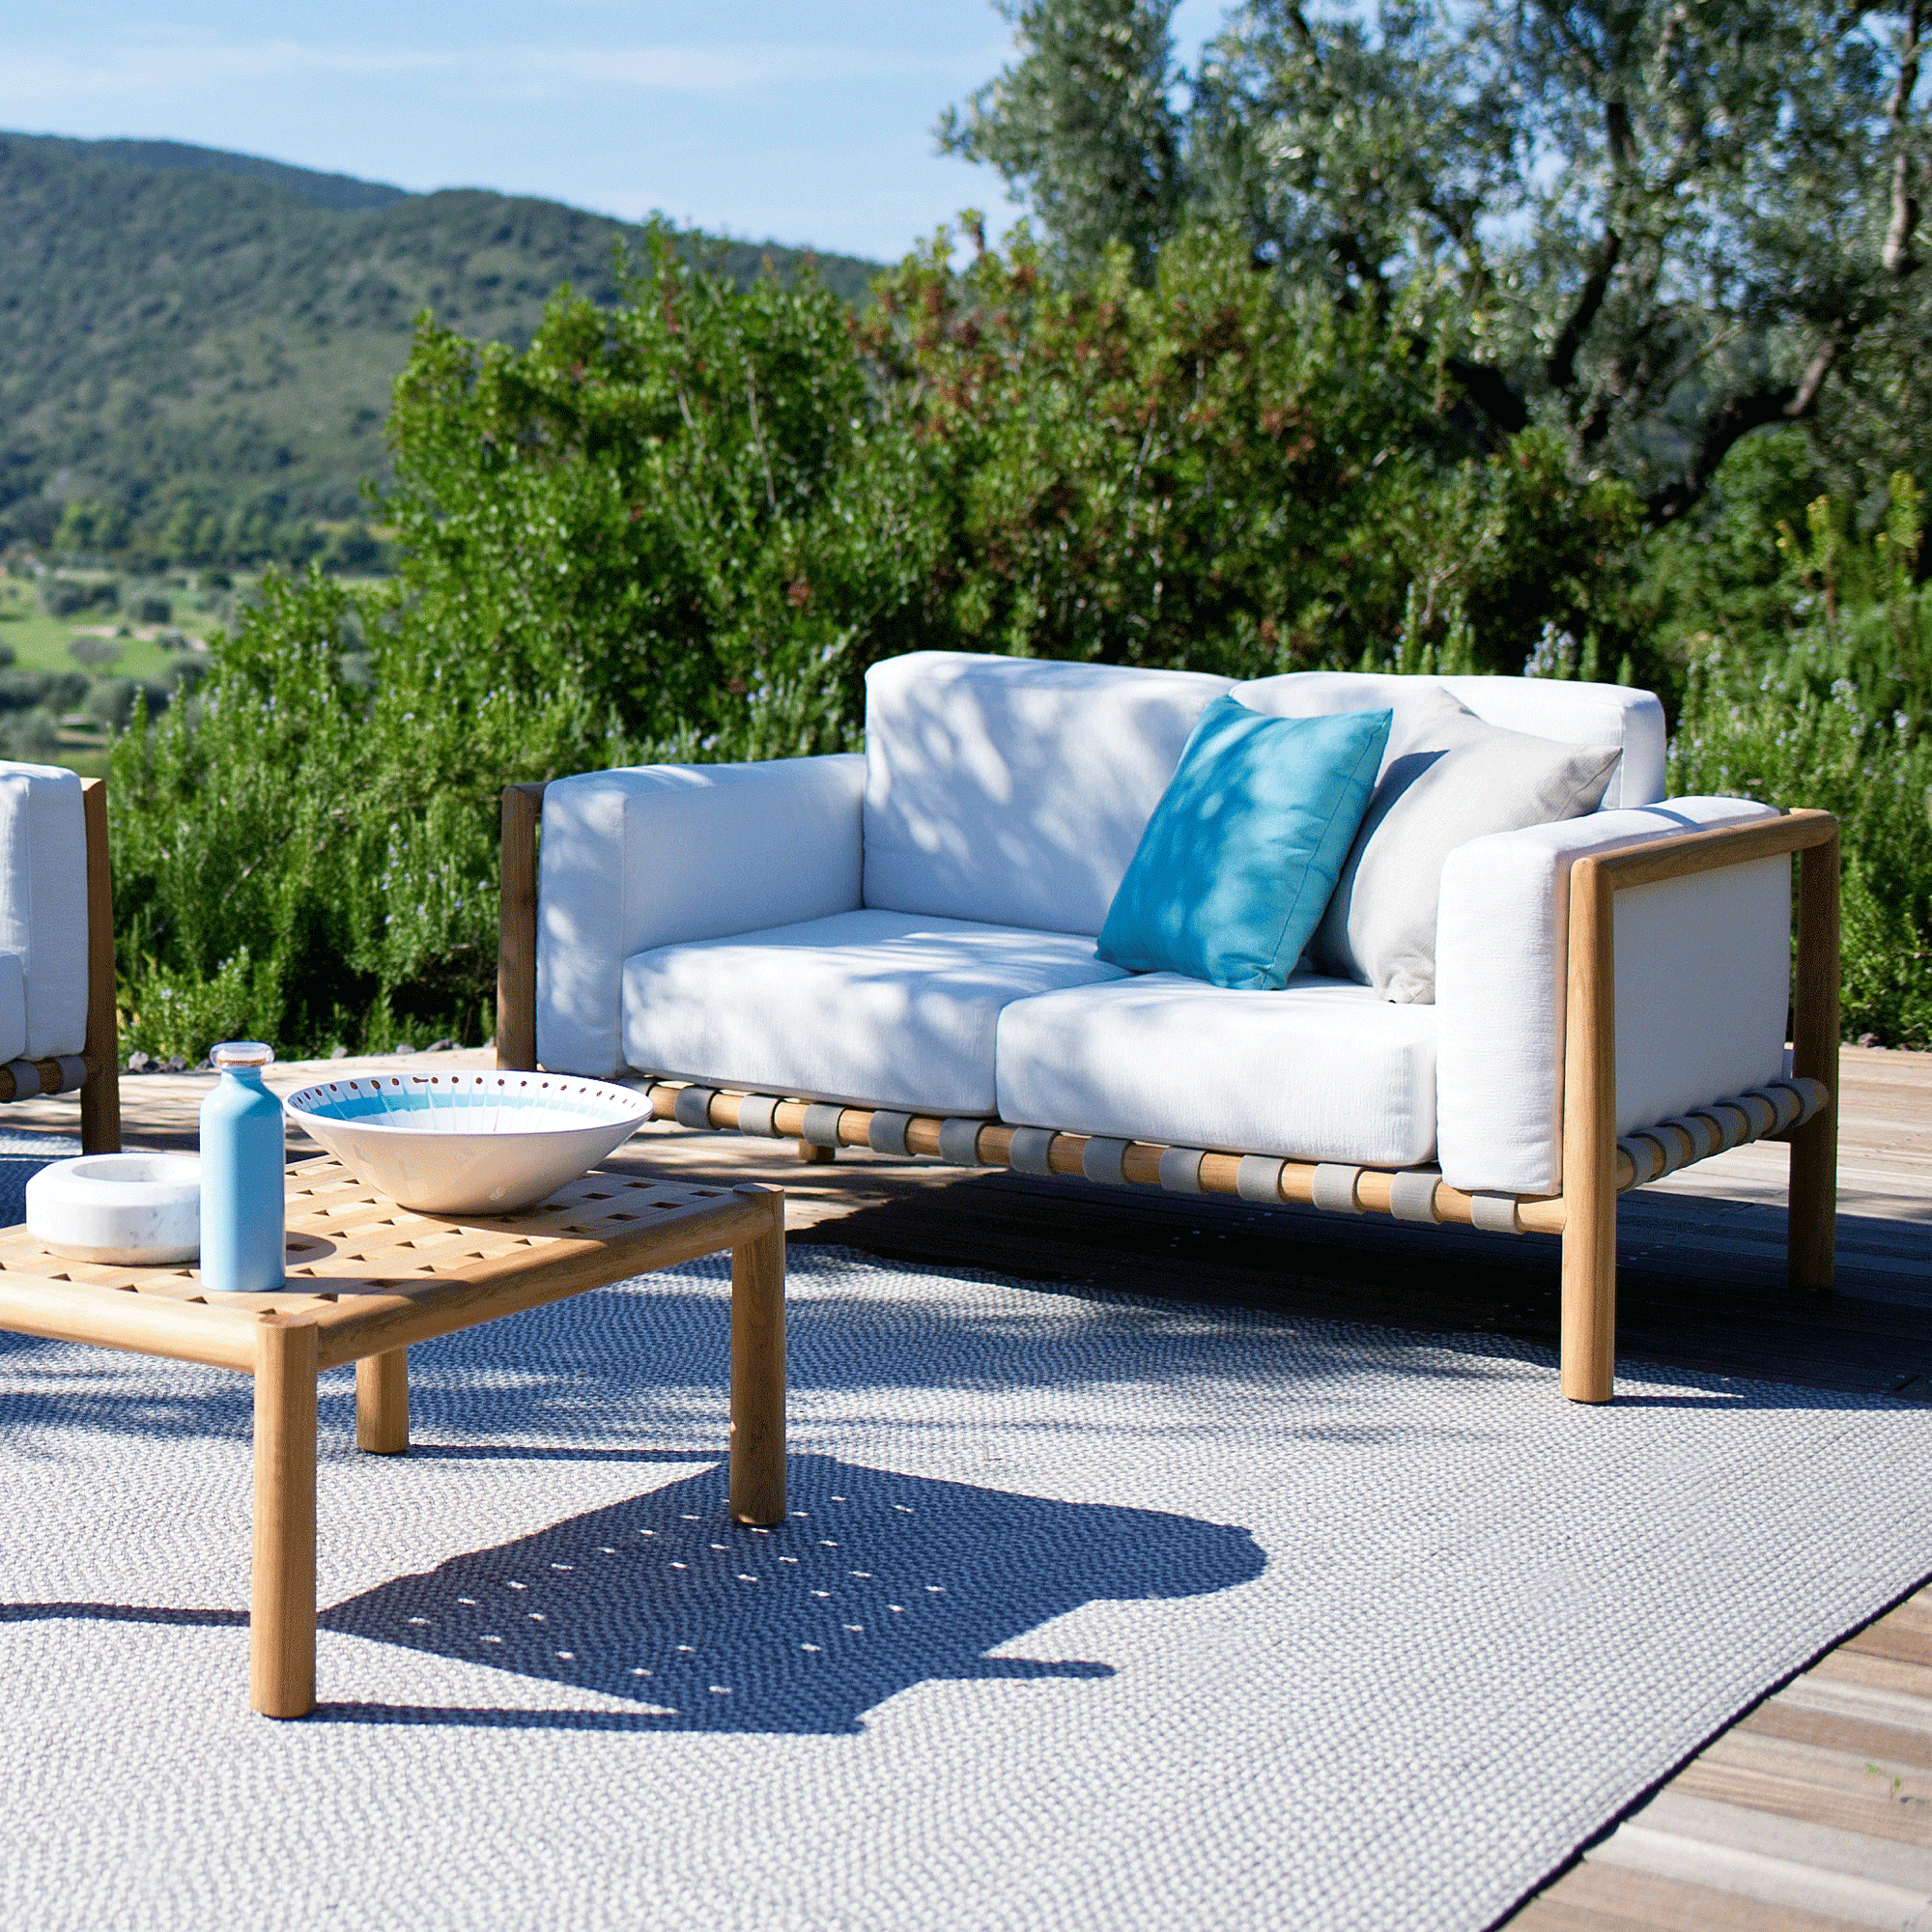 Das gut aussehende Unopiu Pevero Sofa ist für den Garten perfekt geeignet und stellt die passende Sitzgelegenheit als elegantes Outdoor Möbel dar.